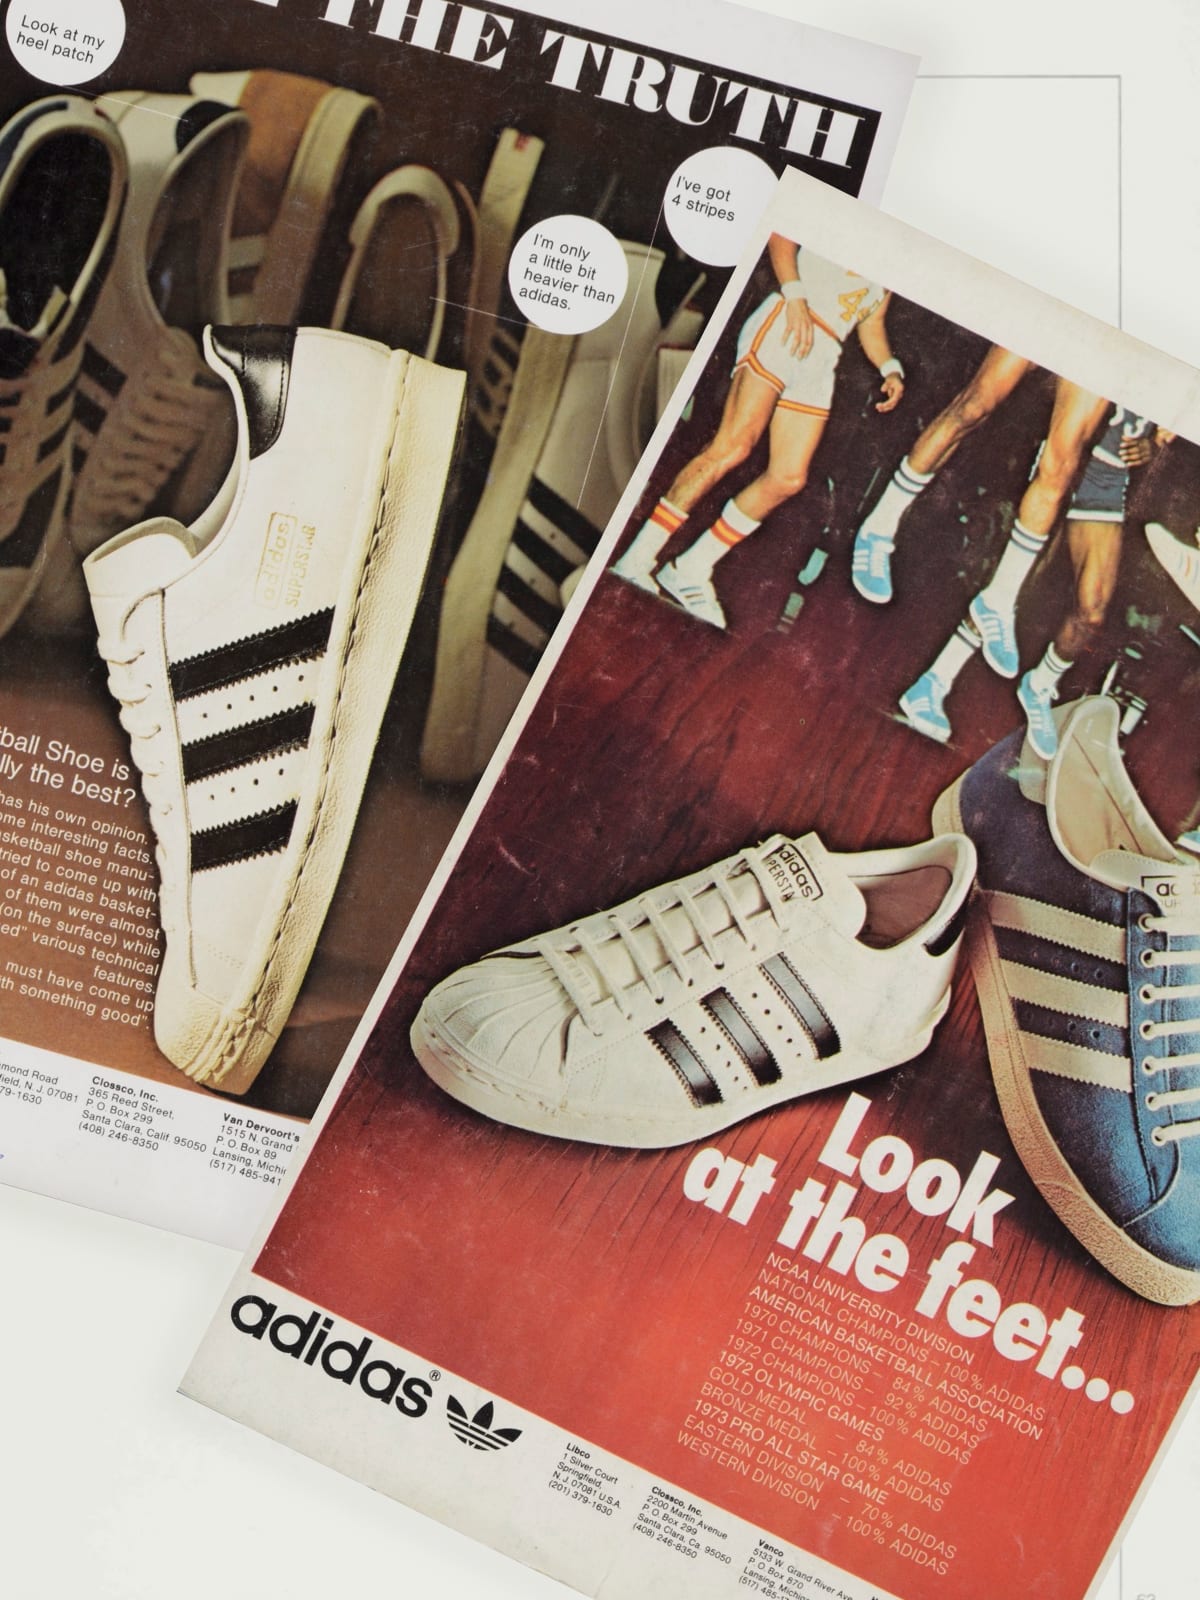 Men's Basketball Shoes | Nike, adidas, UA & More | rebel